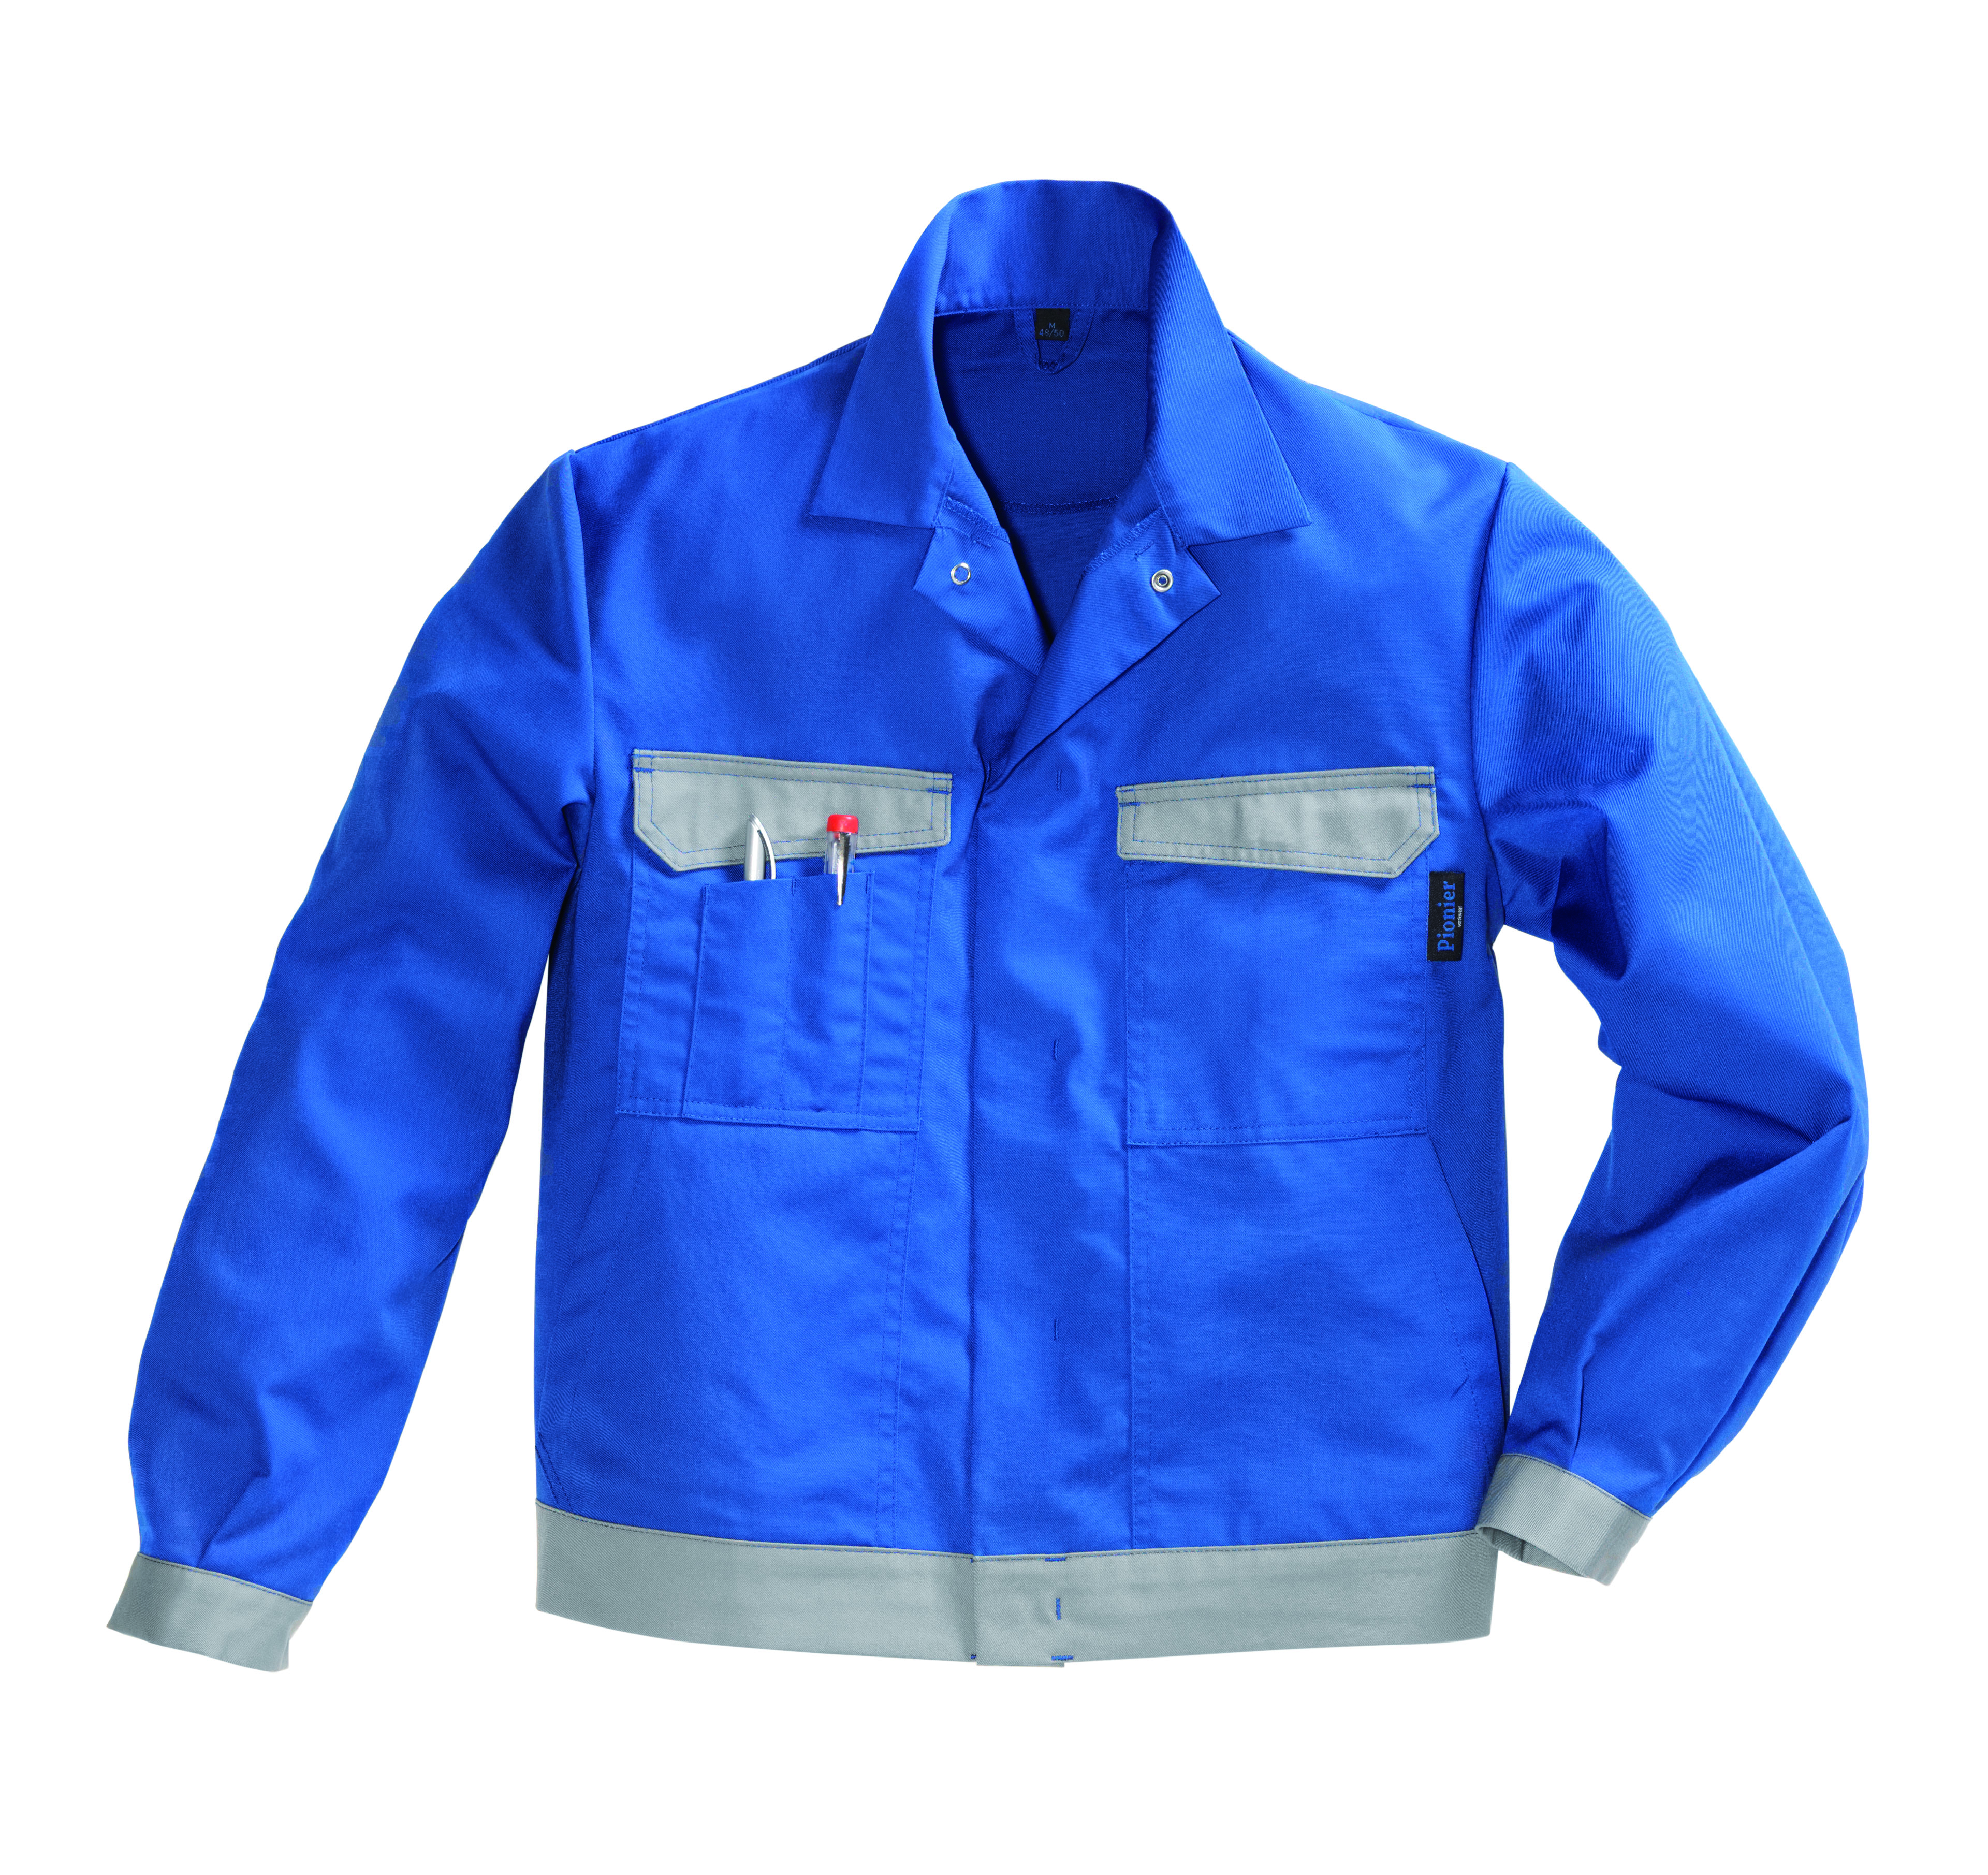 PIONIER Bundjacke Arbeitsjacke Berufsjacke Schutzjacke Arbeitskleidung Berufskleidung kornblau grau